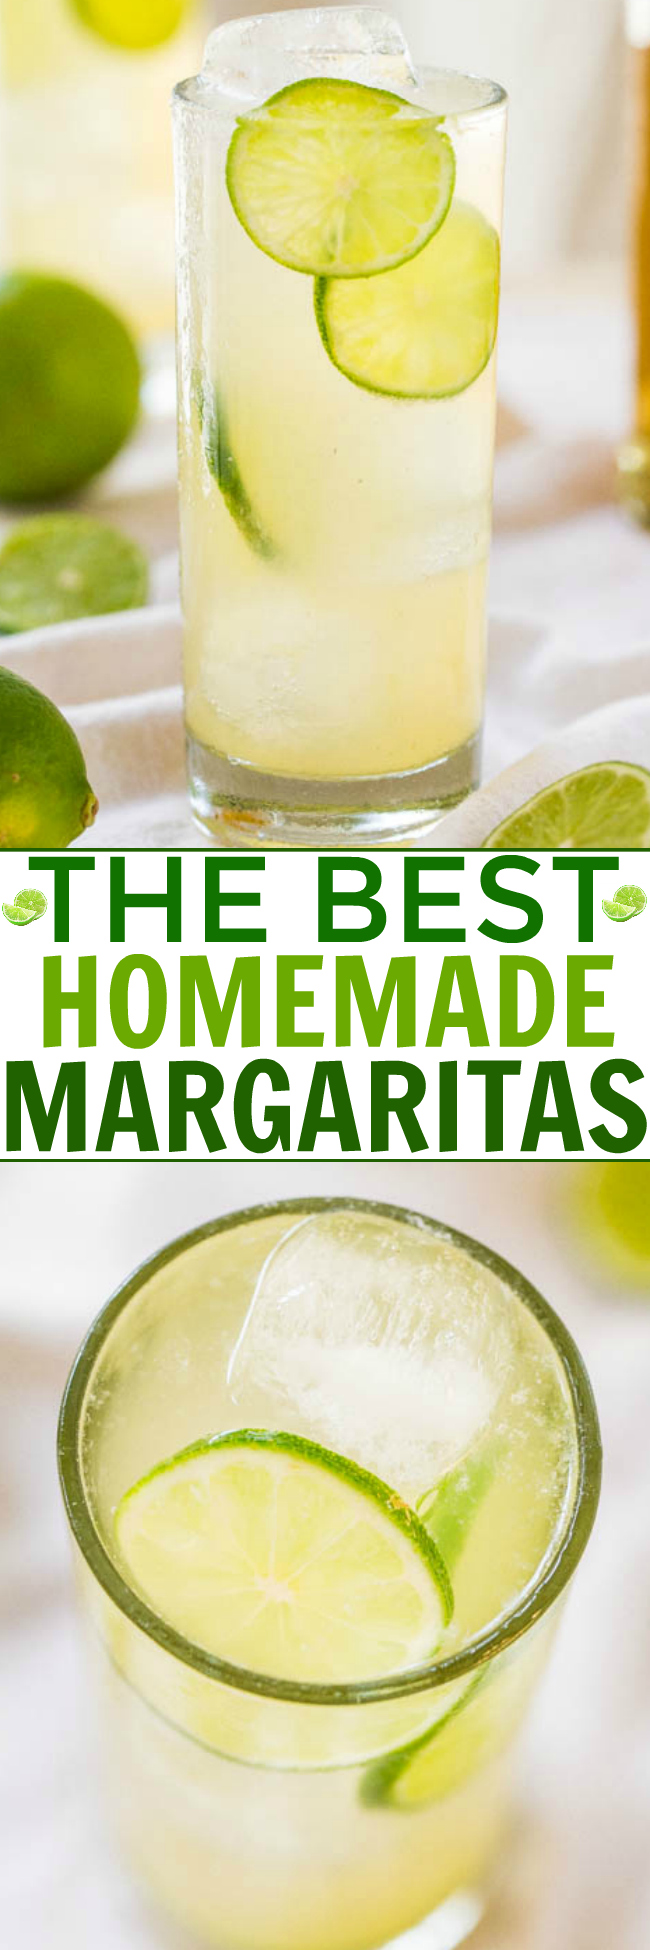 The Margaritaville Blender  It's Not Just For Margaritas!